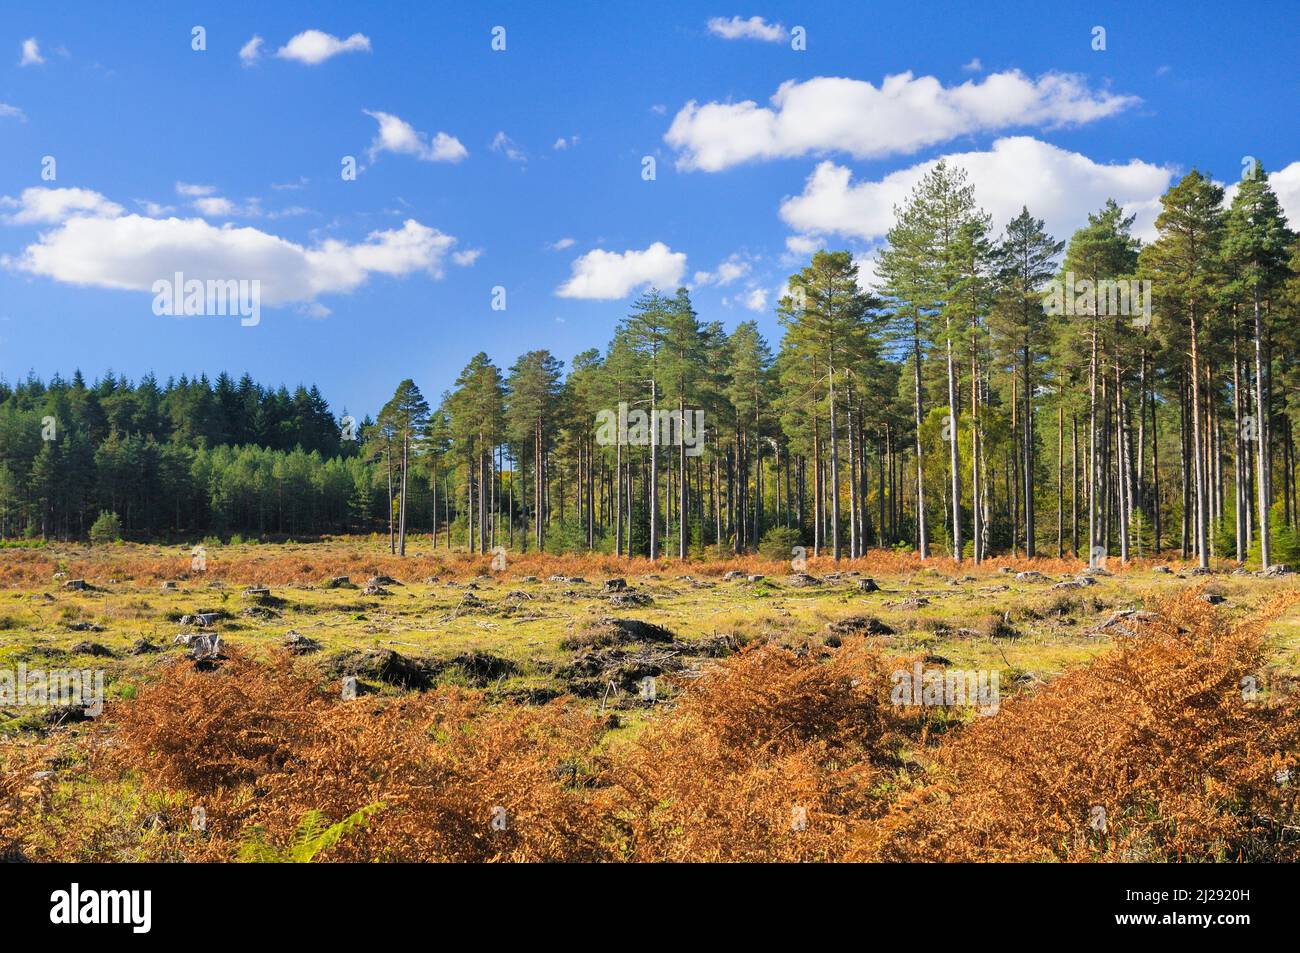 Una radura in una piantagione di pinete dalla deforestazione, New Forest National Park, Hampshire, Inghilterra, Regno Unito Foto Stock